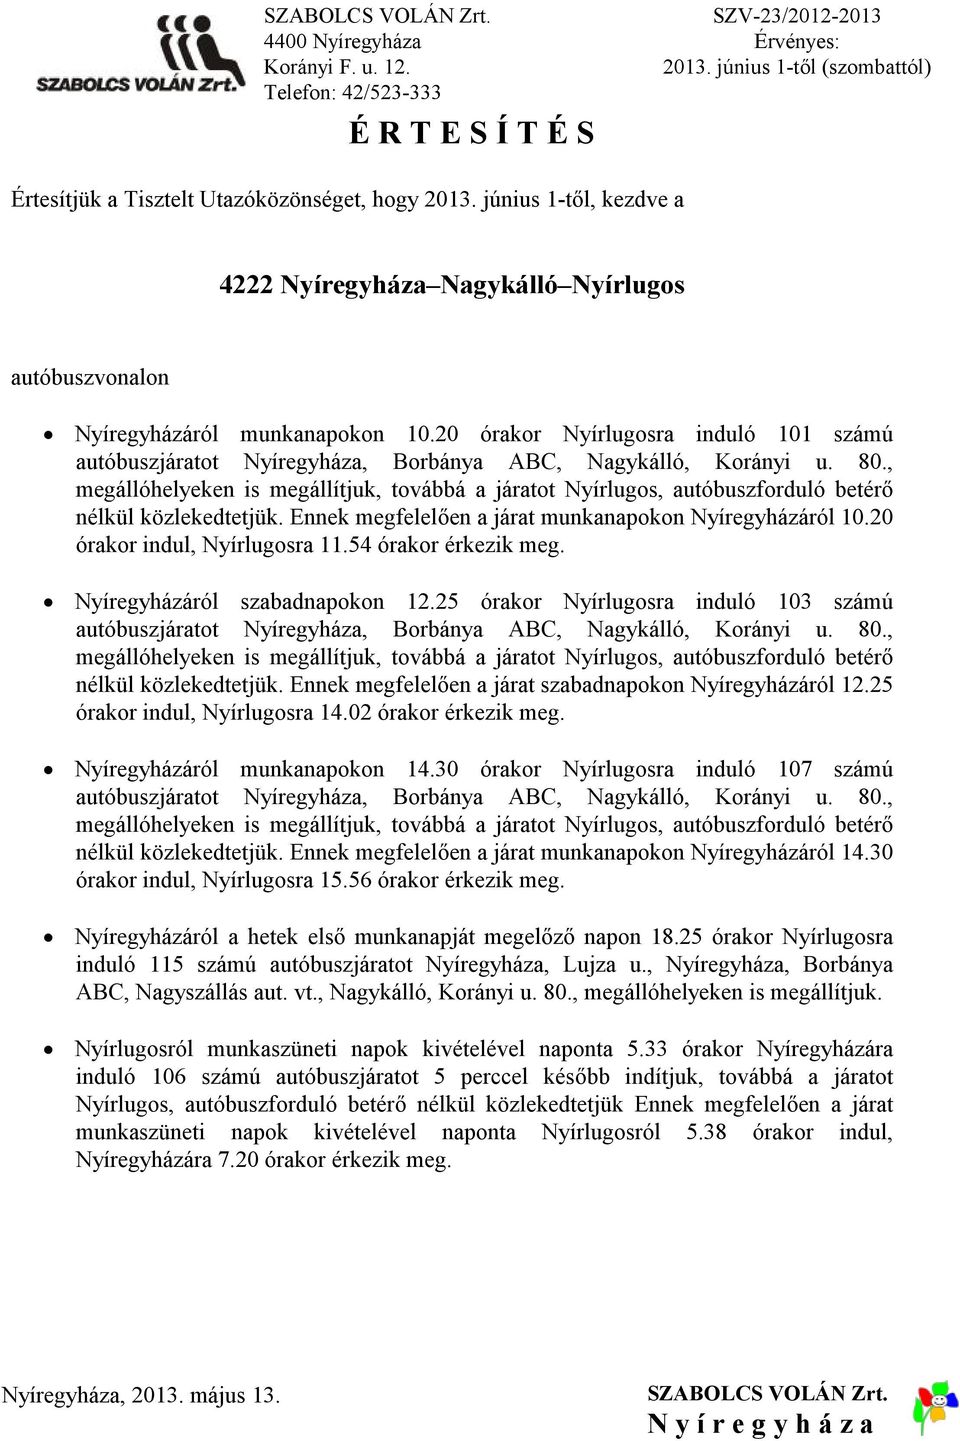 54 órakor Nyíregyházáról szabadnapokon 12.25 órakor Nyírlugosra induló 103 számú autóbuszjáratot Nyíregyháza, Borbánya ABC, Nagykálló, Korányi u. 80.